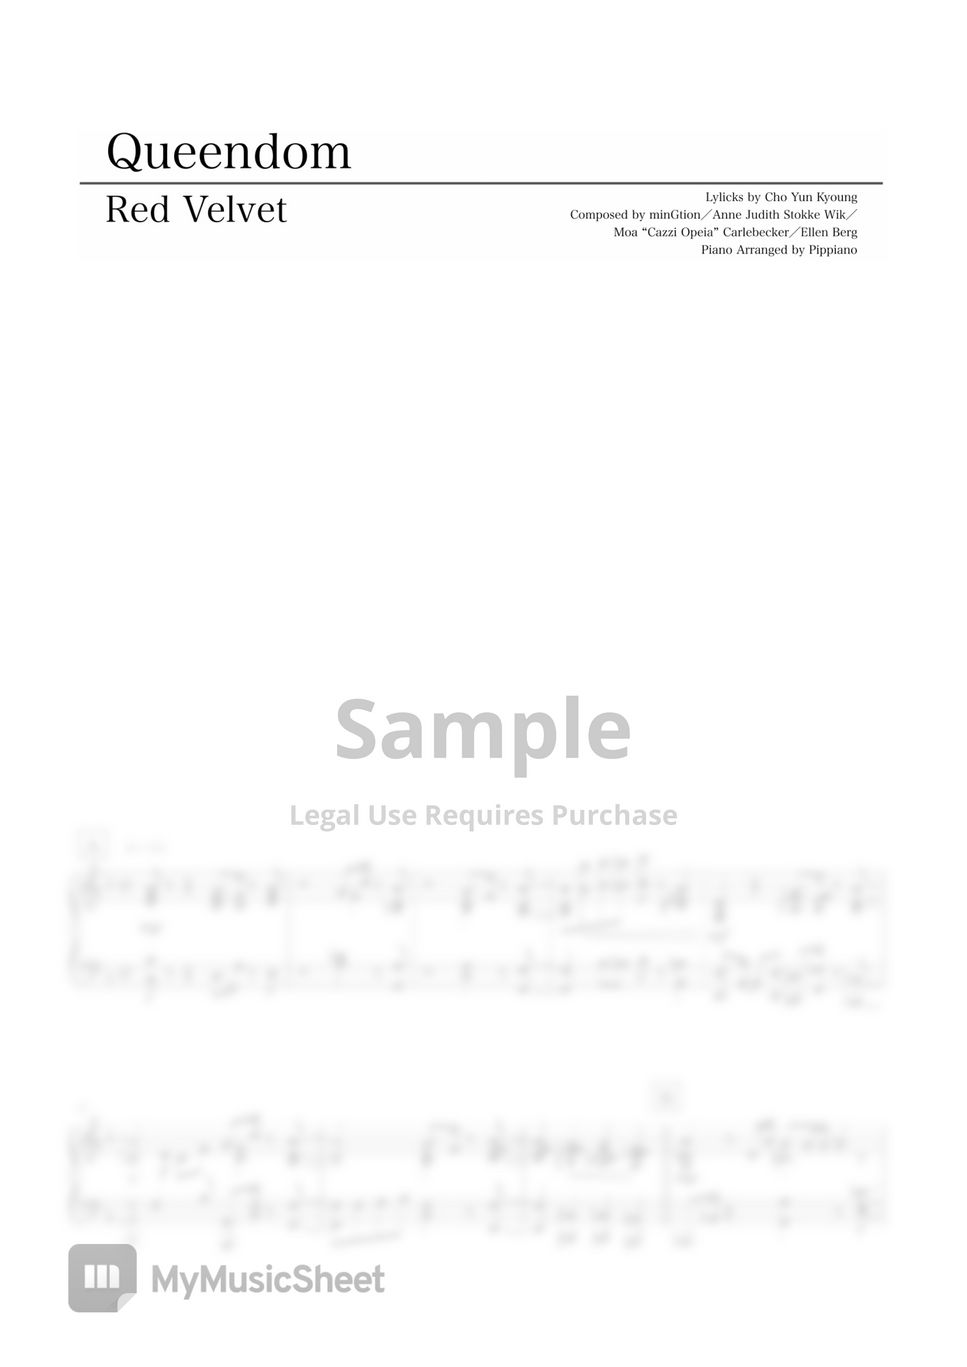 Red Velvet - Queendom by Pippiano